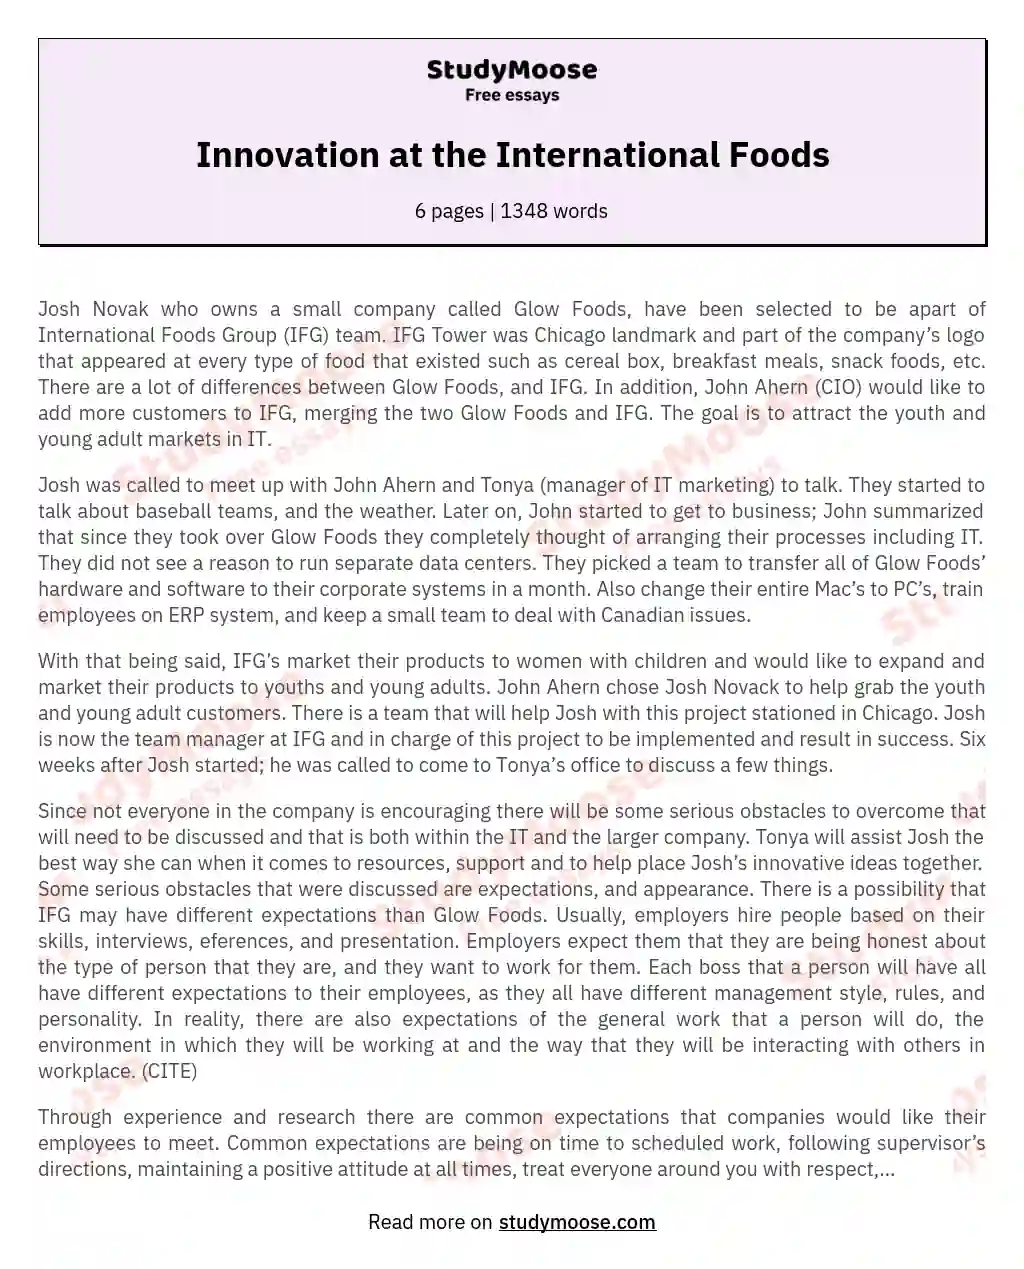 Innovation at the International Foods essay